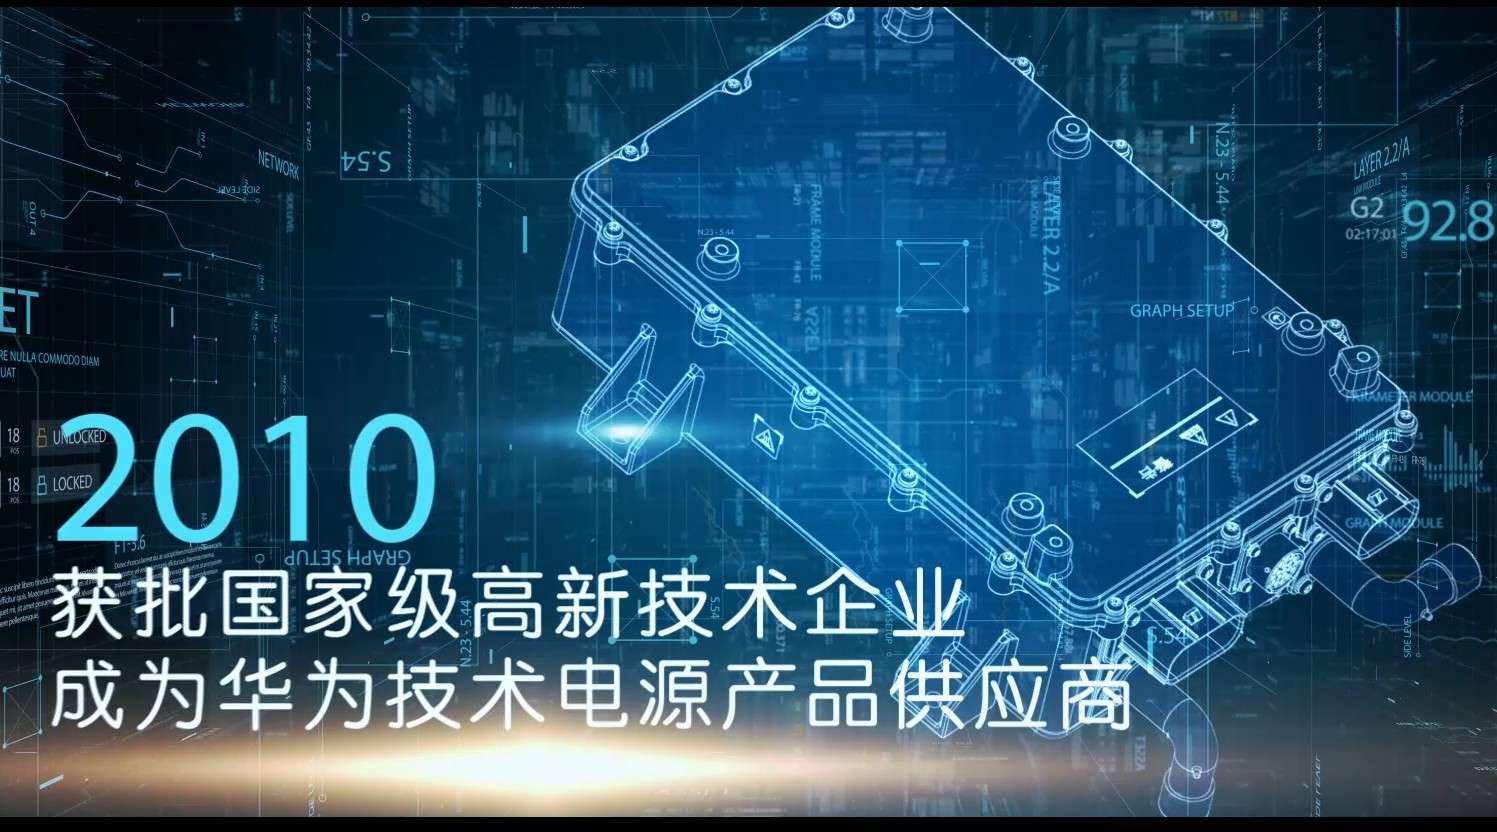 深圳威迈斯电源有限公司《变革》